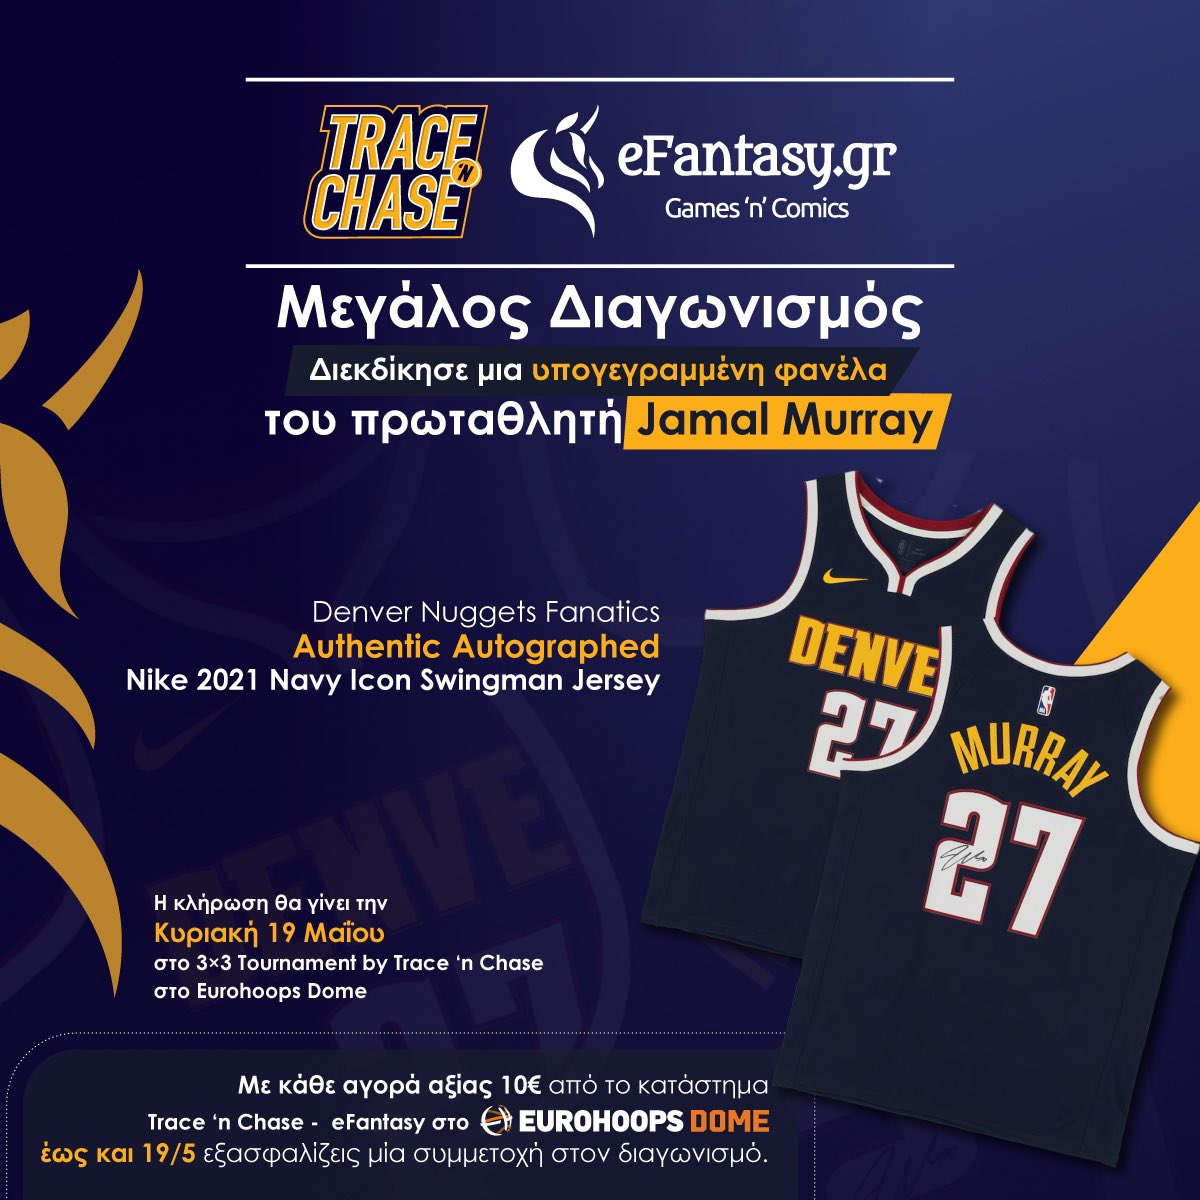 Κάνε τις αγορές σου στο κατάστημα Trace ‘n Chase – eFantasy στο Eurohoops Dome αυτήν την εβδομάδα και μπες στην κλήρωση για τη φανέλα του Πρωταθλητή του NBA με τους Denver Nuggets, Jamal Murray την Κυριακή 19 Μαΐου! Περισσότερες πληροφορίες εδώ 👉🏼 tinyurl.com/3rpm5c9h